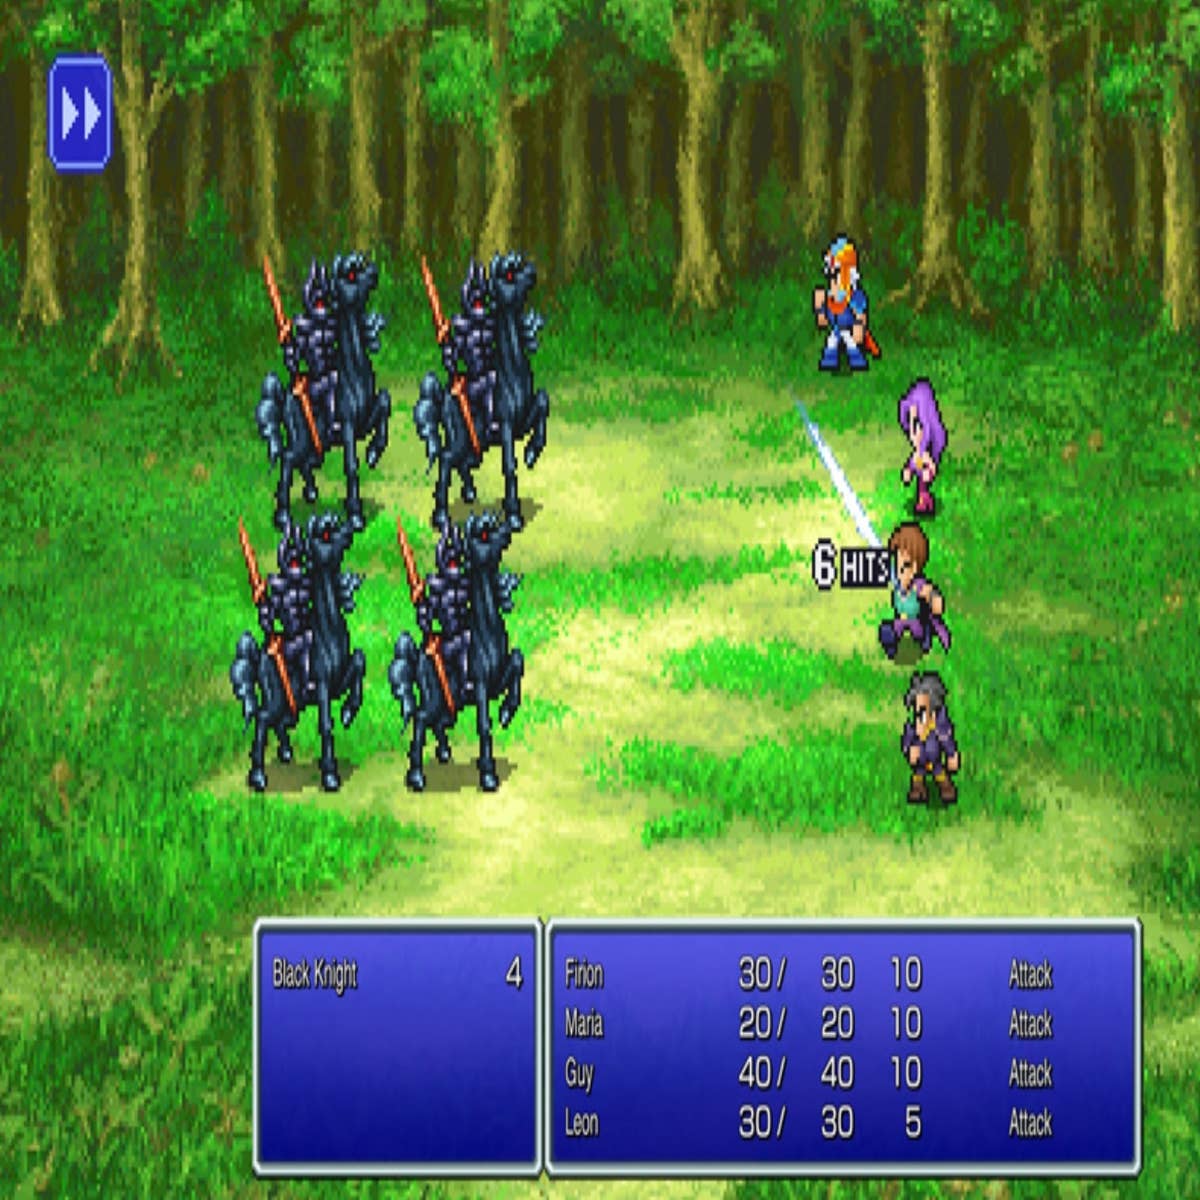 Final Fantasy 2 Pixel Remaster Walkthrough, Guide, Gameplay, Wiki - News